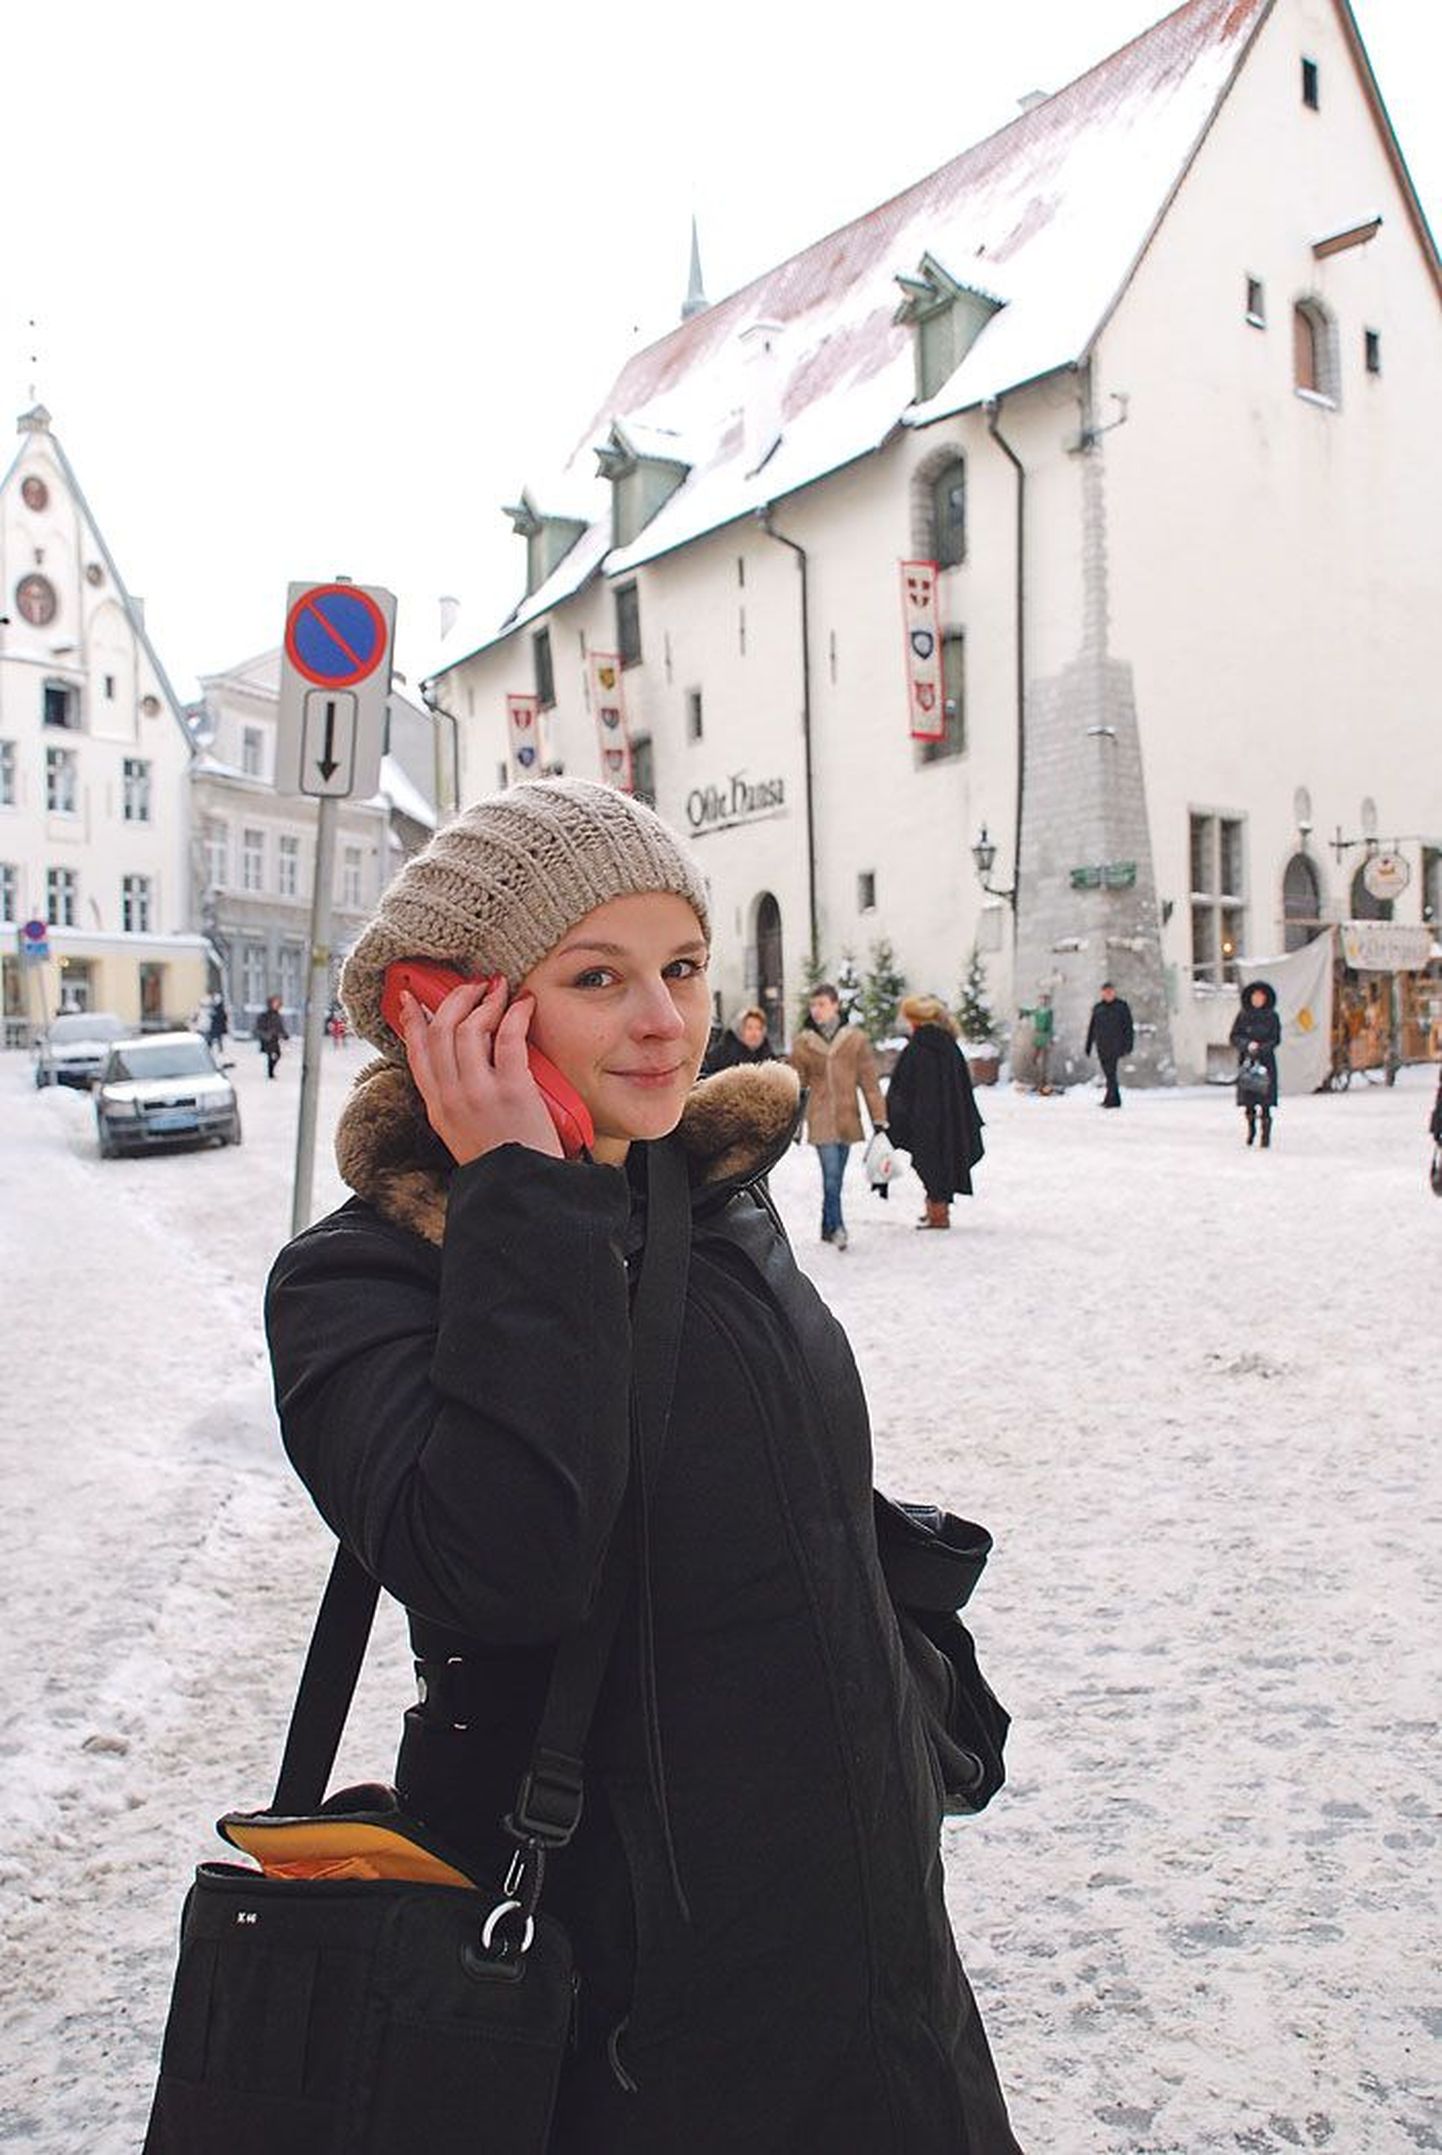 Vene turist võib Tallinnas arvestada viisaka suhtumisega, kuid suveniiride hinnad on siin hullupööra kõrged, veendus päeva turistina Tallinnas veetnud Ksenia Repson.